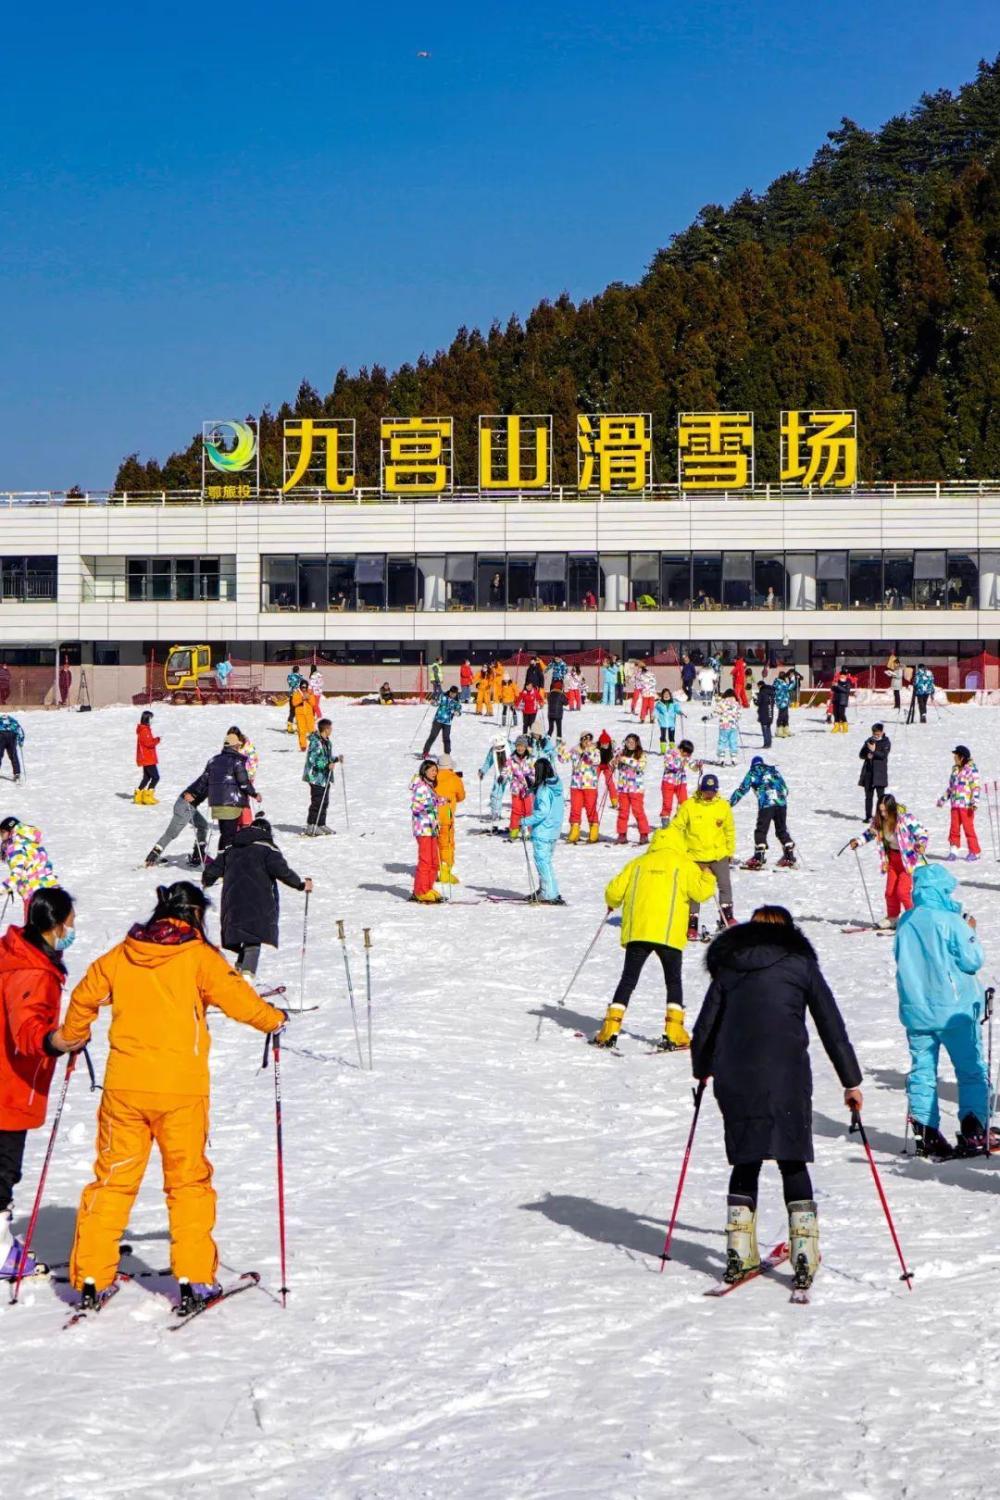 享有"江南第一高山室外滑雪场"的美誉九宫山滑雪场,每至滑雪季,到此地